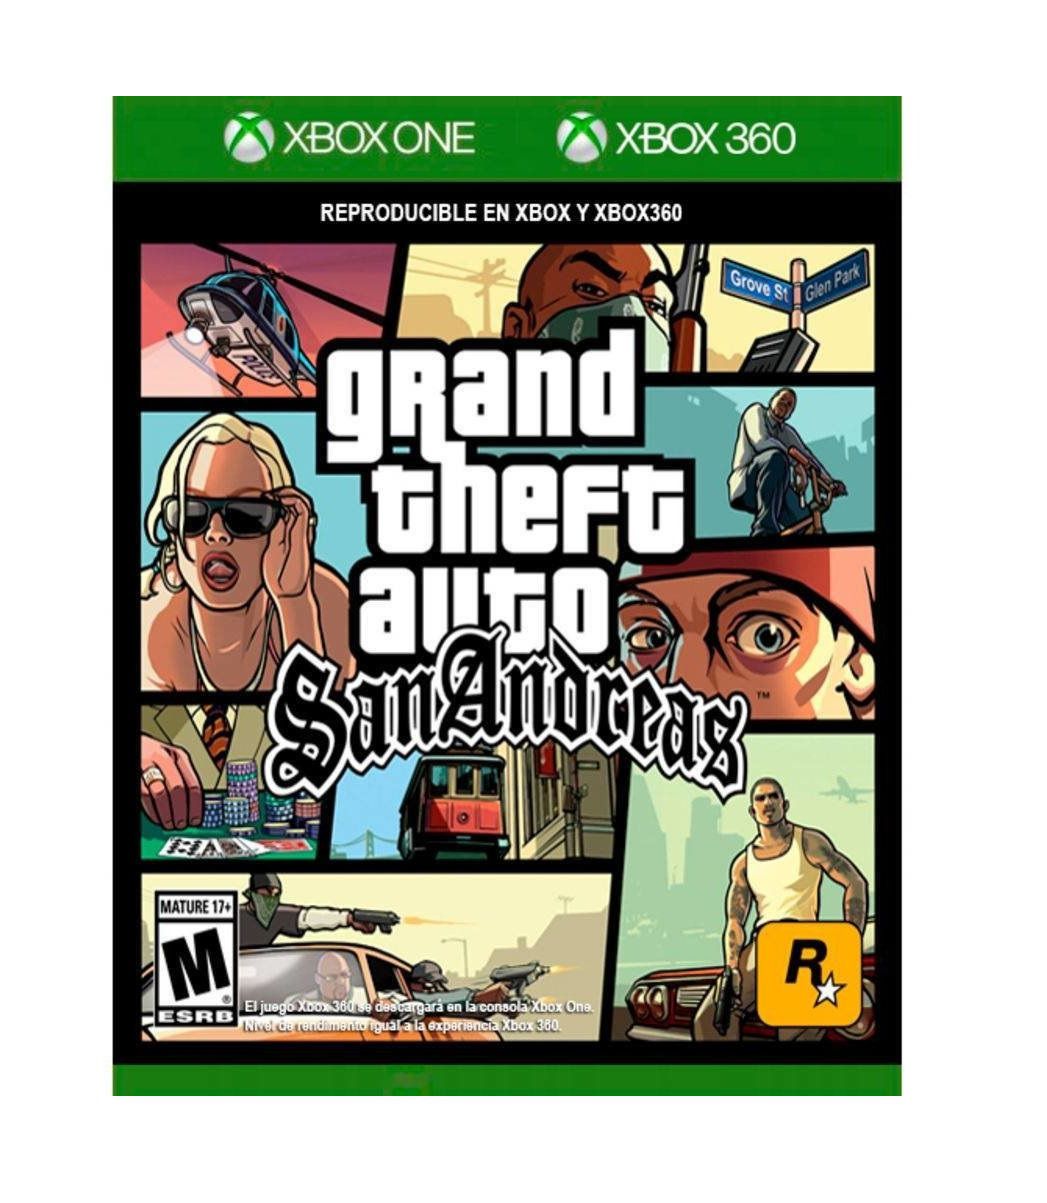 Gta San Andreas para Xbox 360 Remasterizado - Mostrando o jogo e usando  códigos!! 